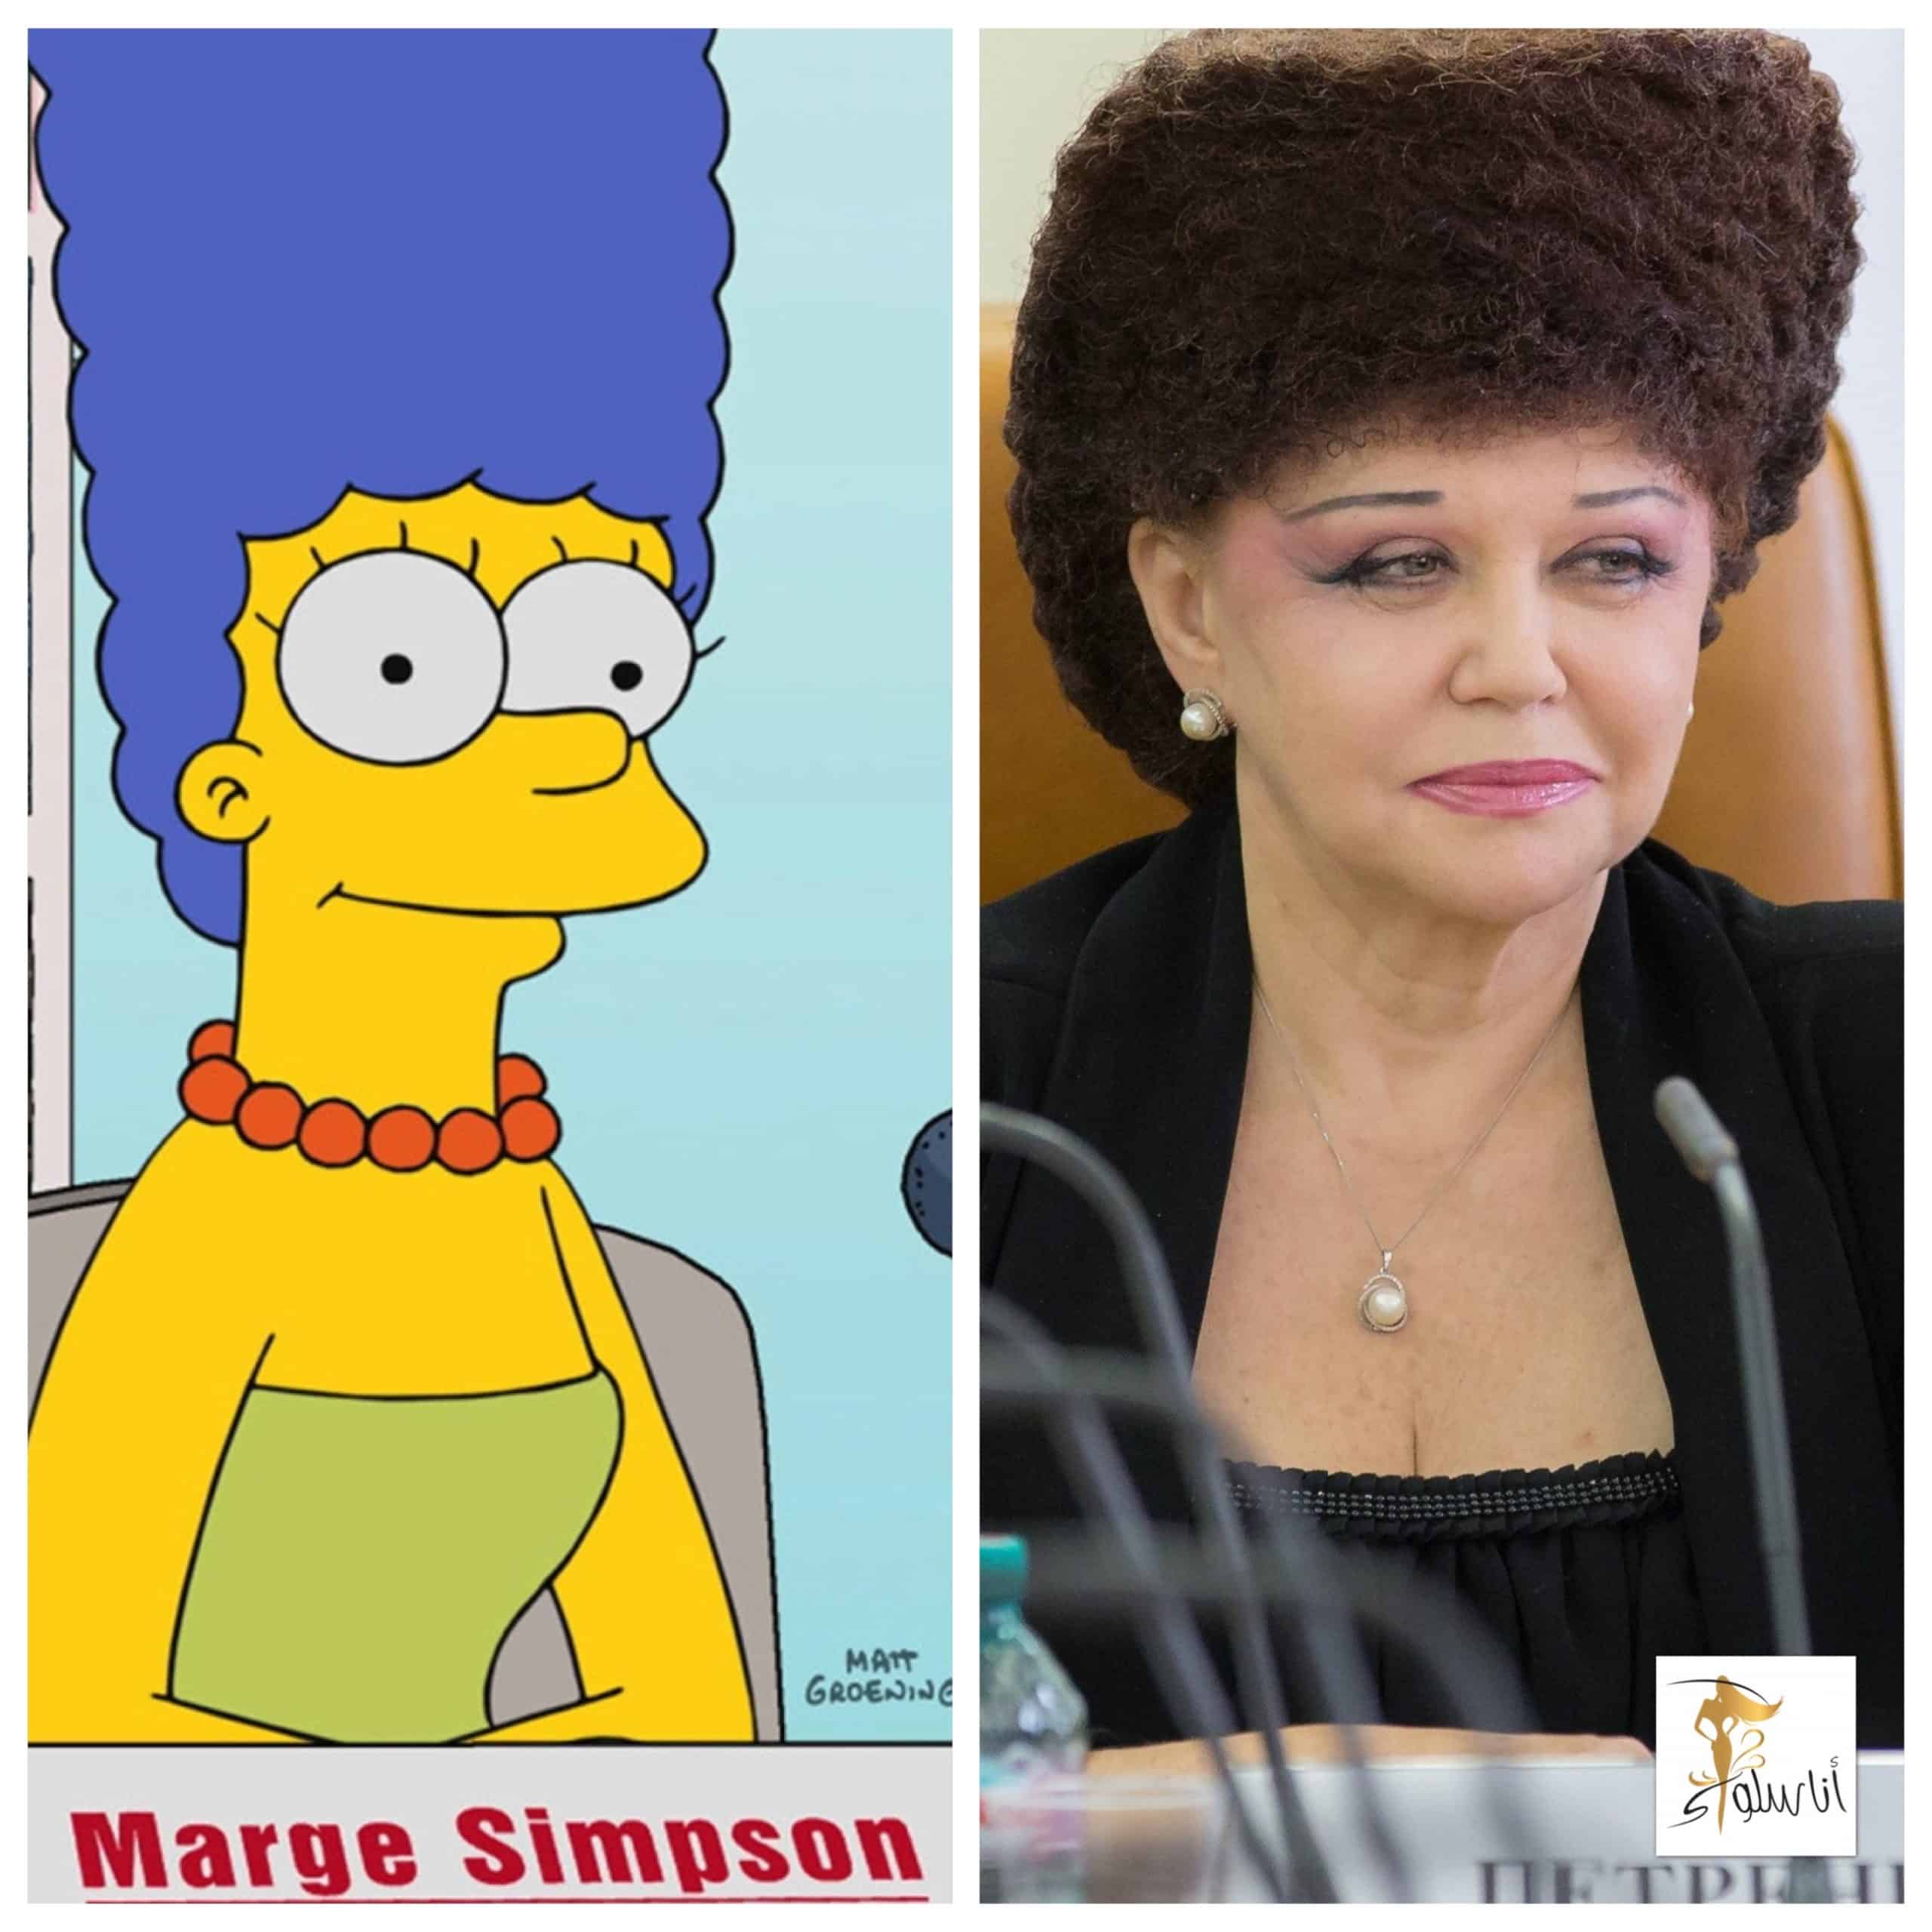 نائبة روسية بسبب تسريحتها تشبه ب مارج سيمبسون